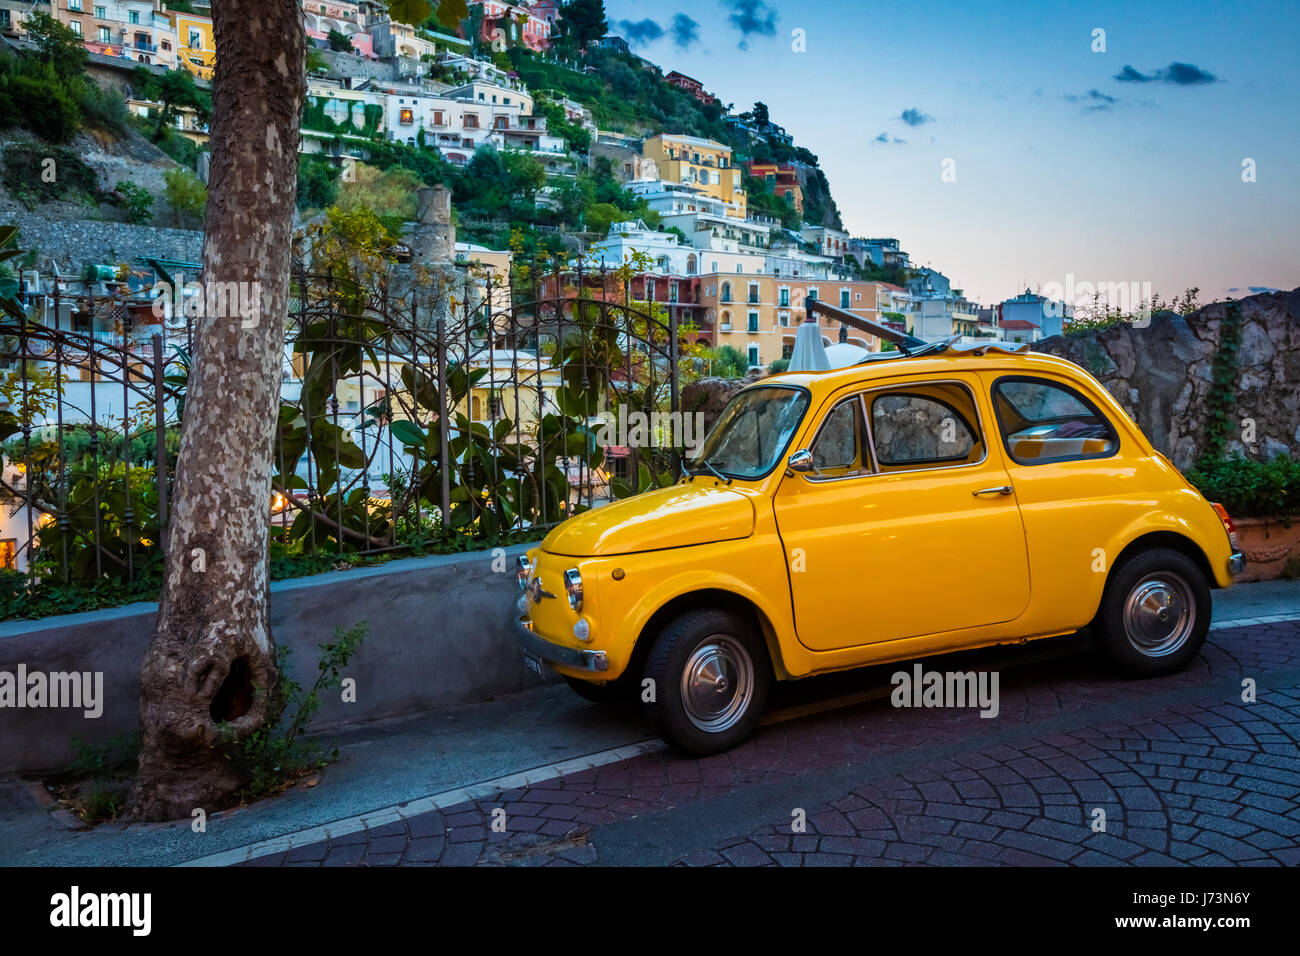 Fiat jaune dans Positano sur la côte amalfitaine Banque D'Images